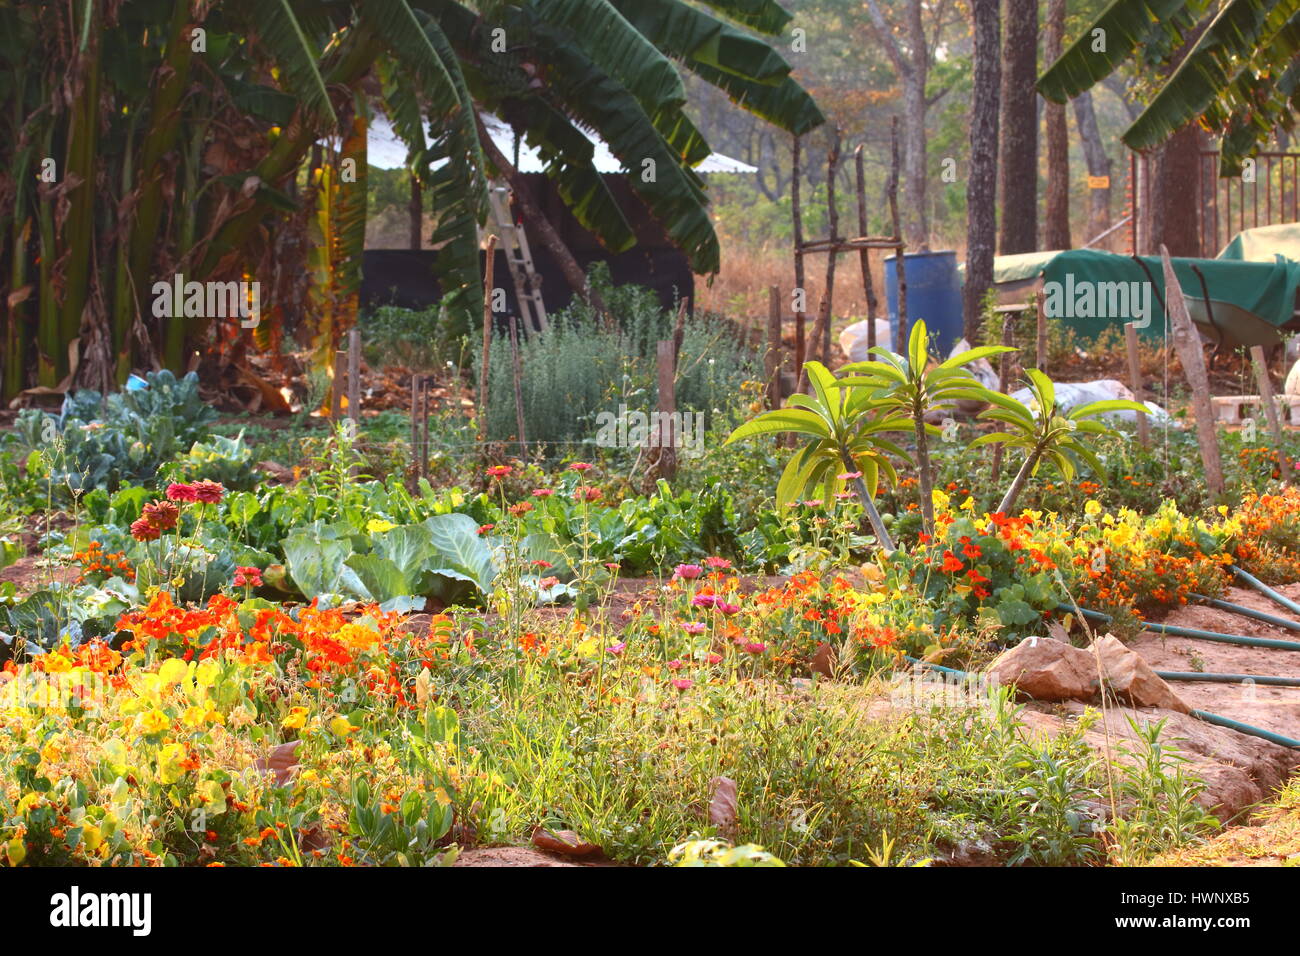 Molto vivace e colorata, scena da cortile che mostra una varietà di cibo sano e produrre Foto Stock